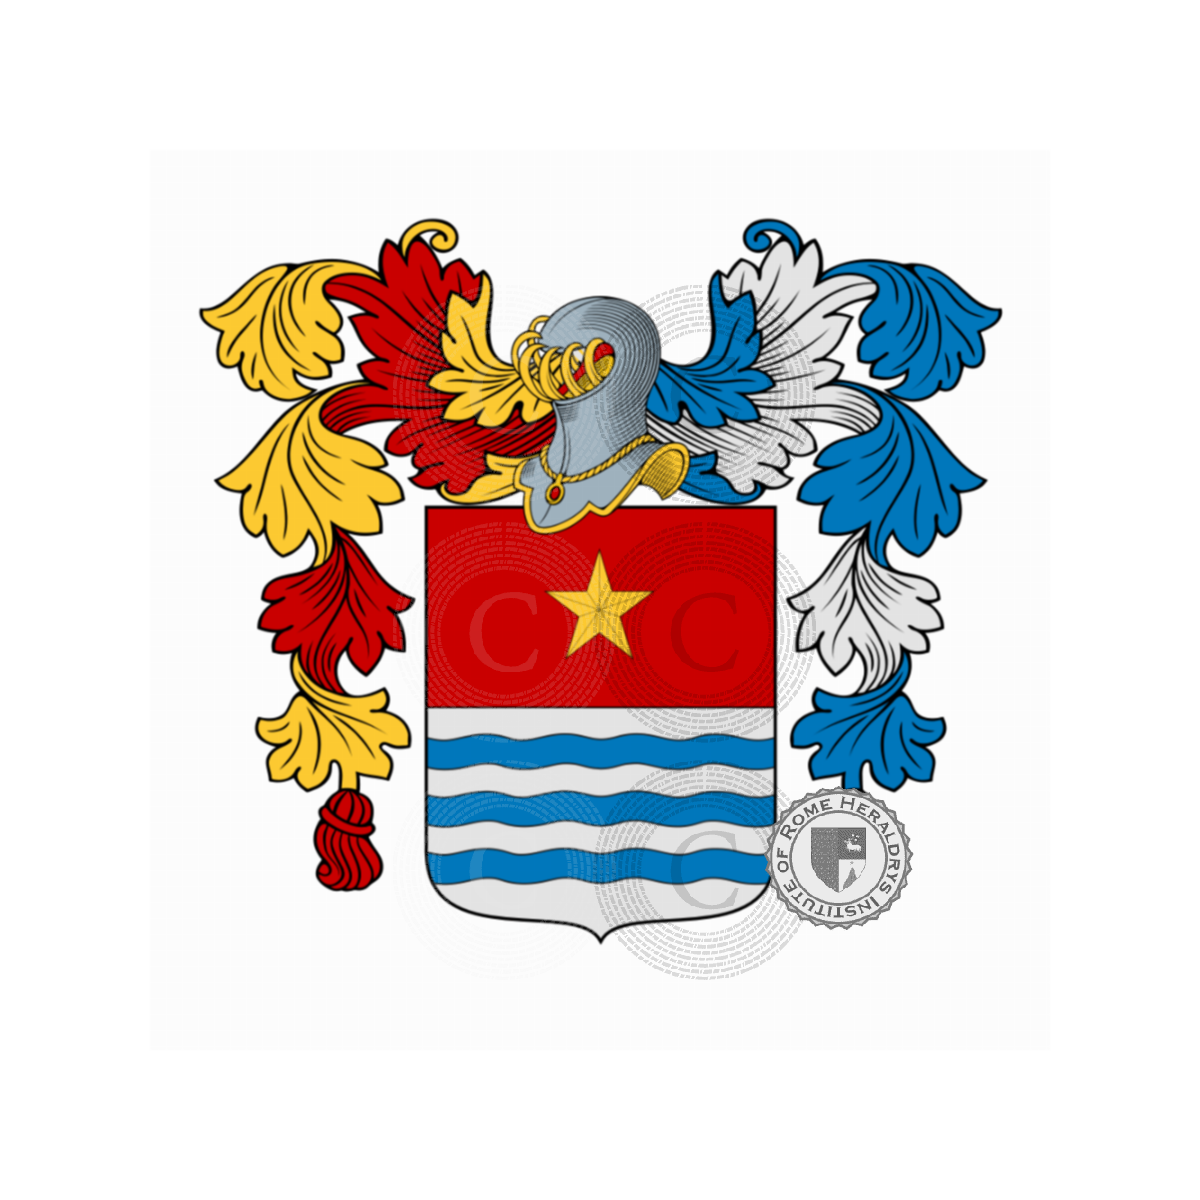 Escudo de la familiaGiordano, de Giordani,Giordana,Giordano delle Lanze,Giordano Lanza,Iordanus,Longo